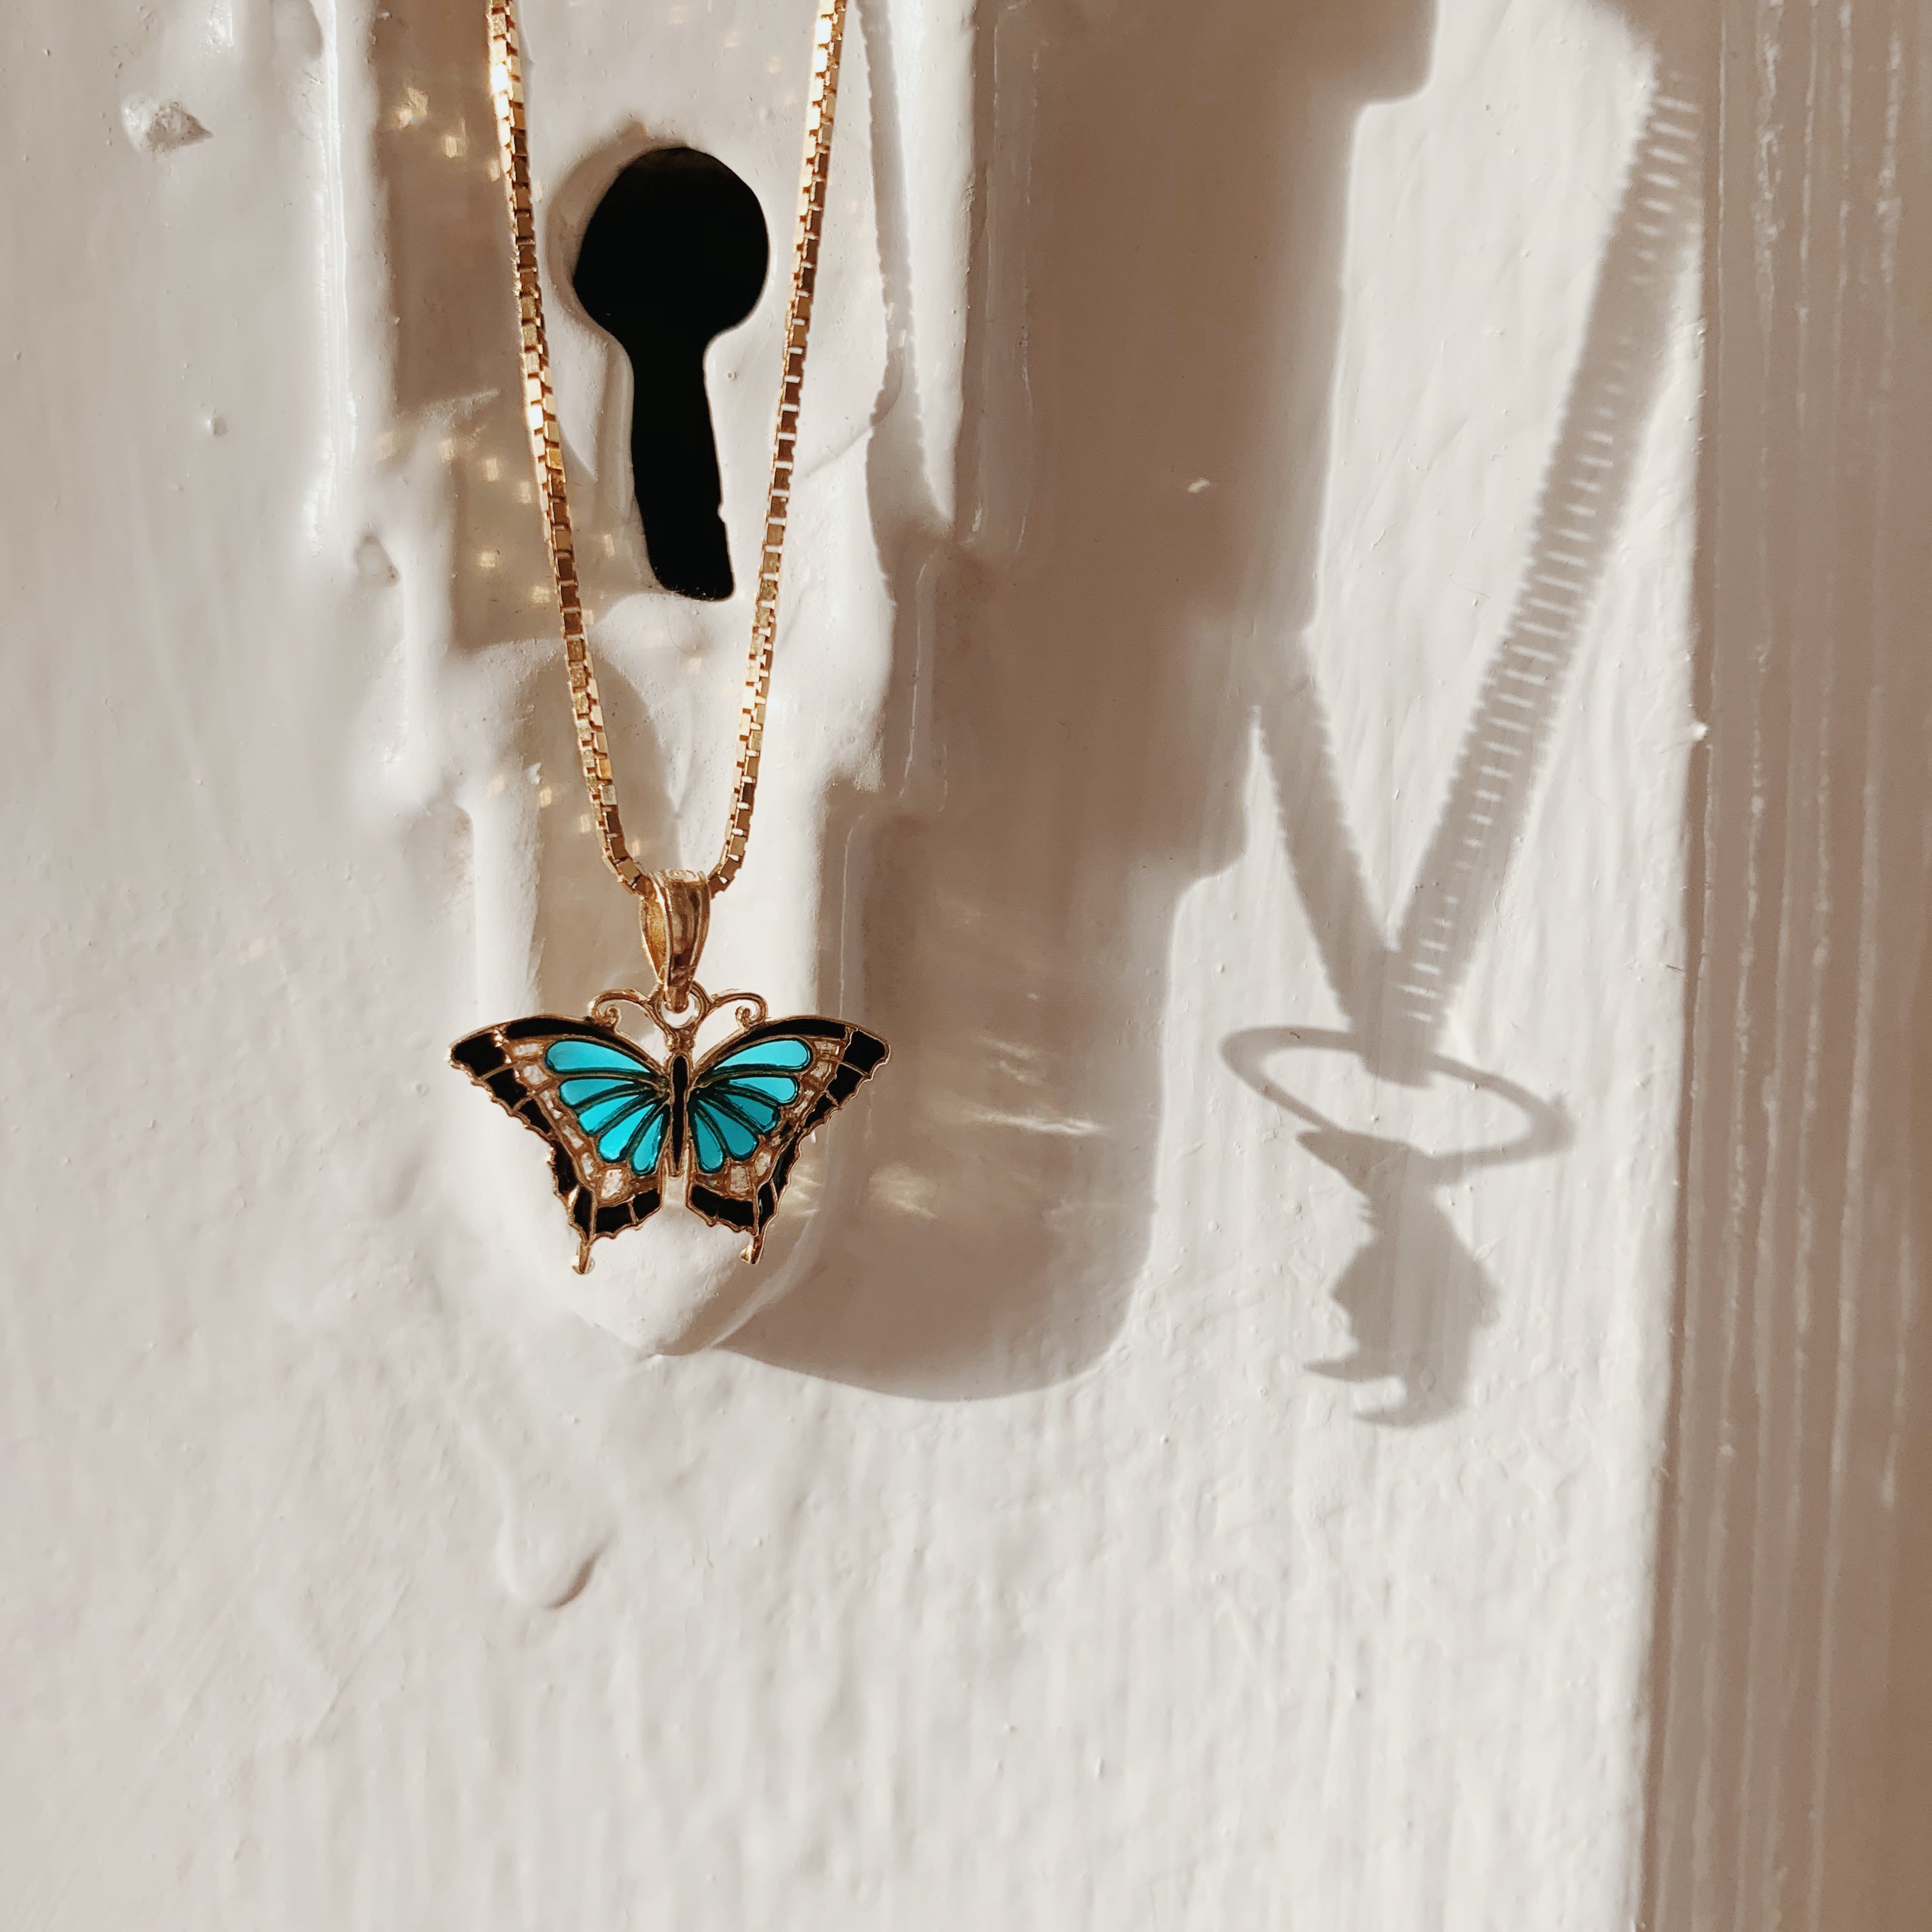 14K Small Aqua Blue Enameled Wings Butterfly Charm